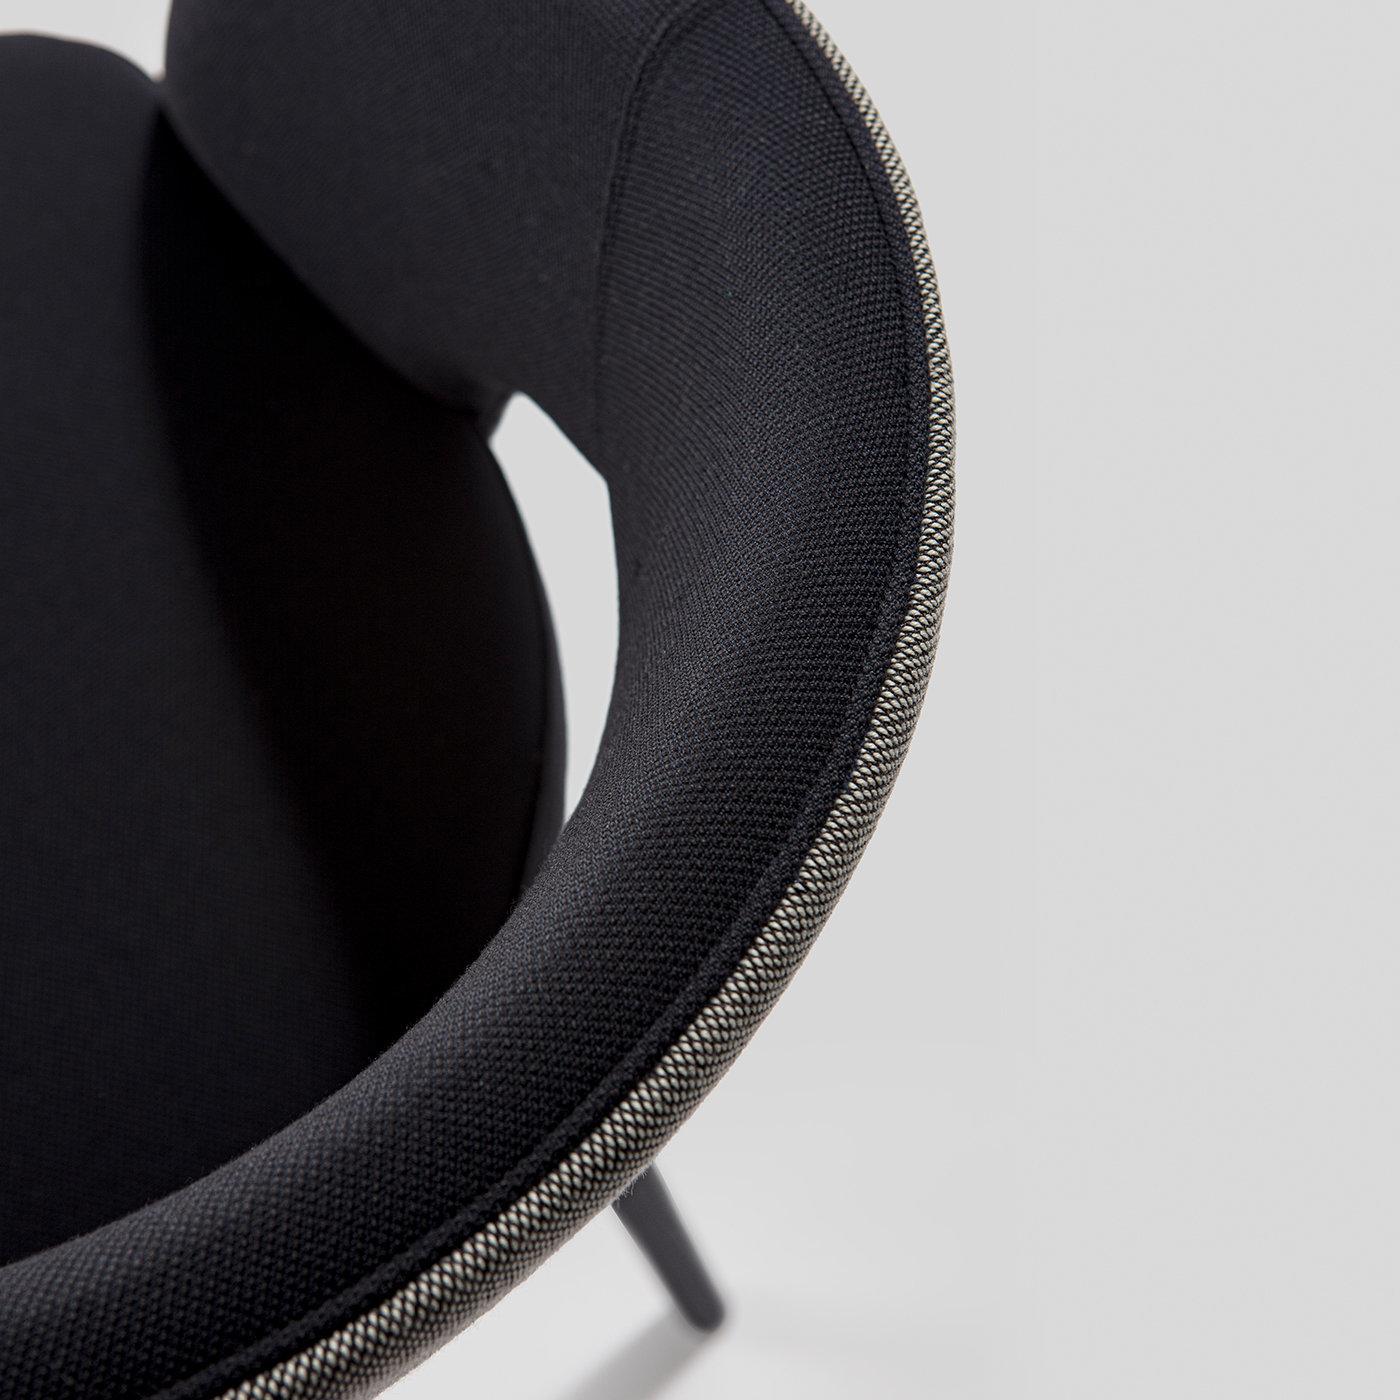 Design und Langlebigkeit treffen in diesem von der Mitte des Jahrhunderts inspirierten Esszimmer-Sessel aufeinander, der sowohl im Esszimmer als auch im Büro eine dramatische und luxuriöse Ergänzung darstellt. Das maßgeschneiderte Design ist